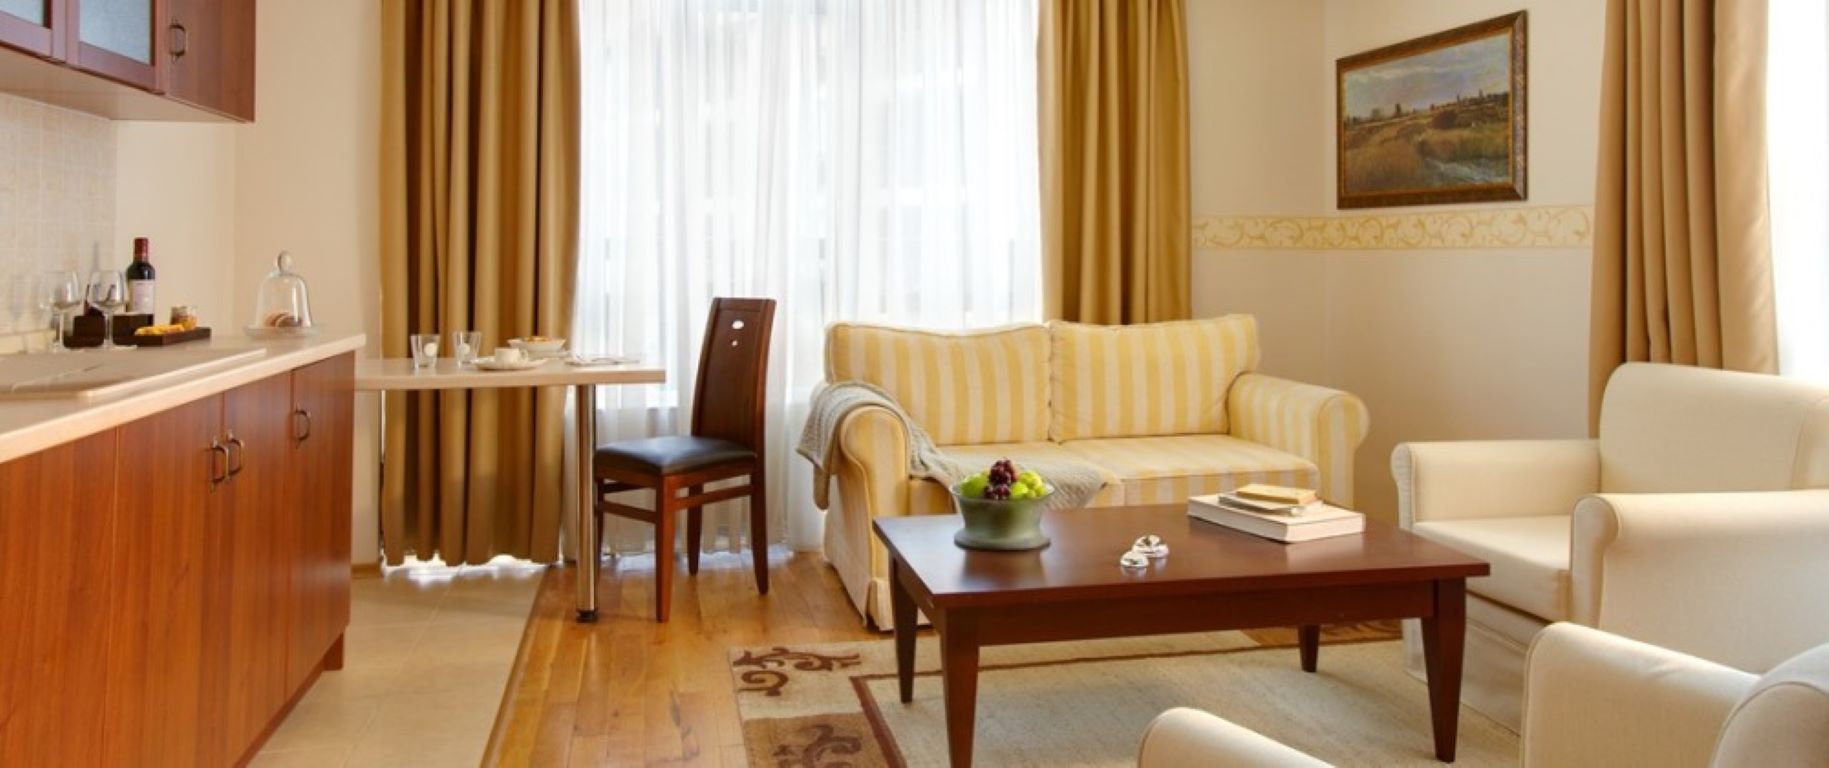 Premier luxury Resort - family suite.jpg